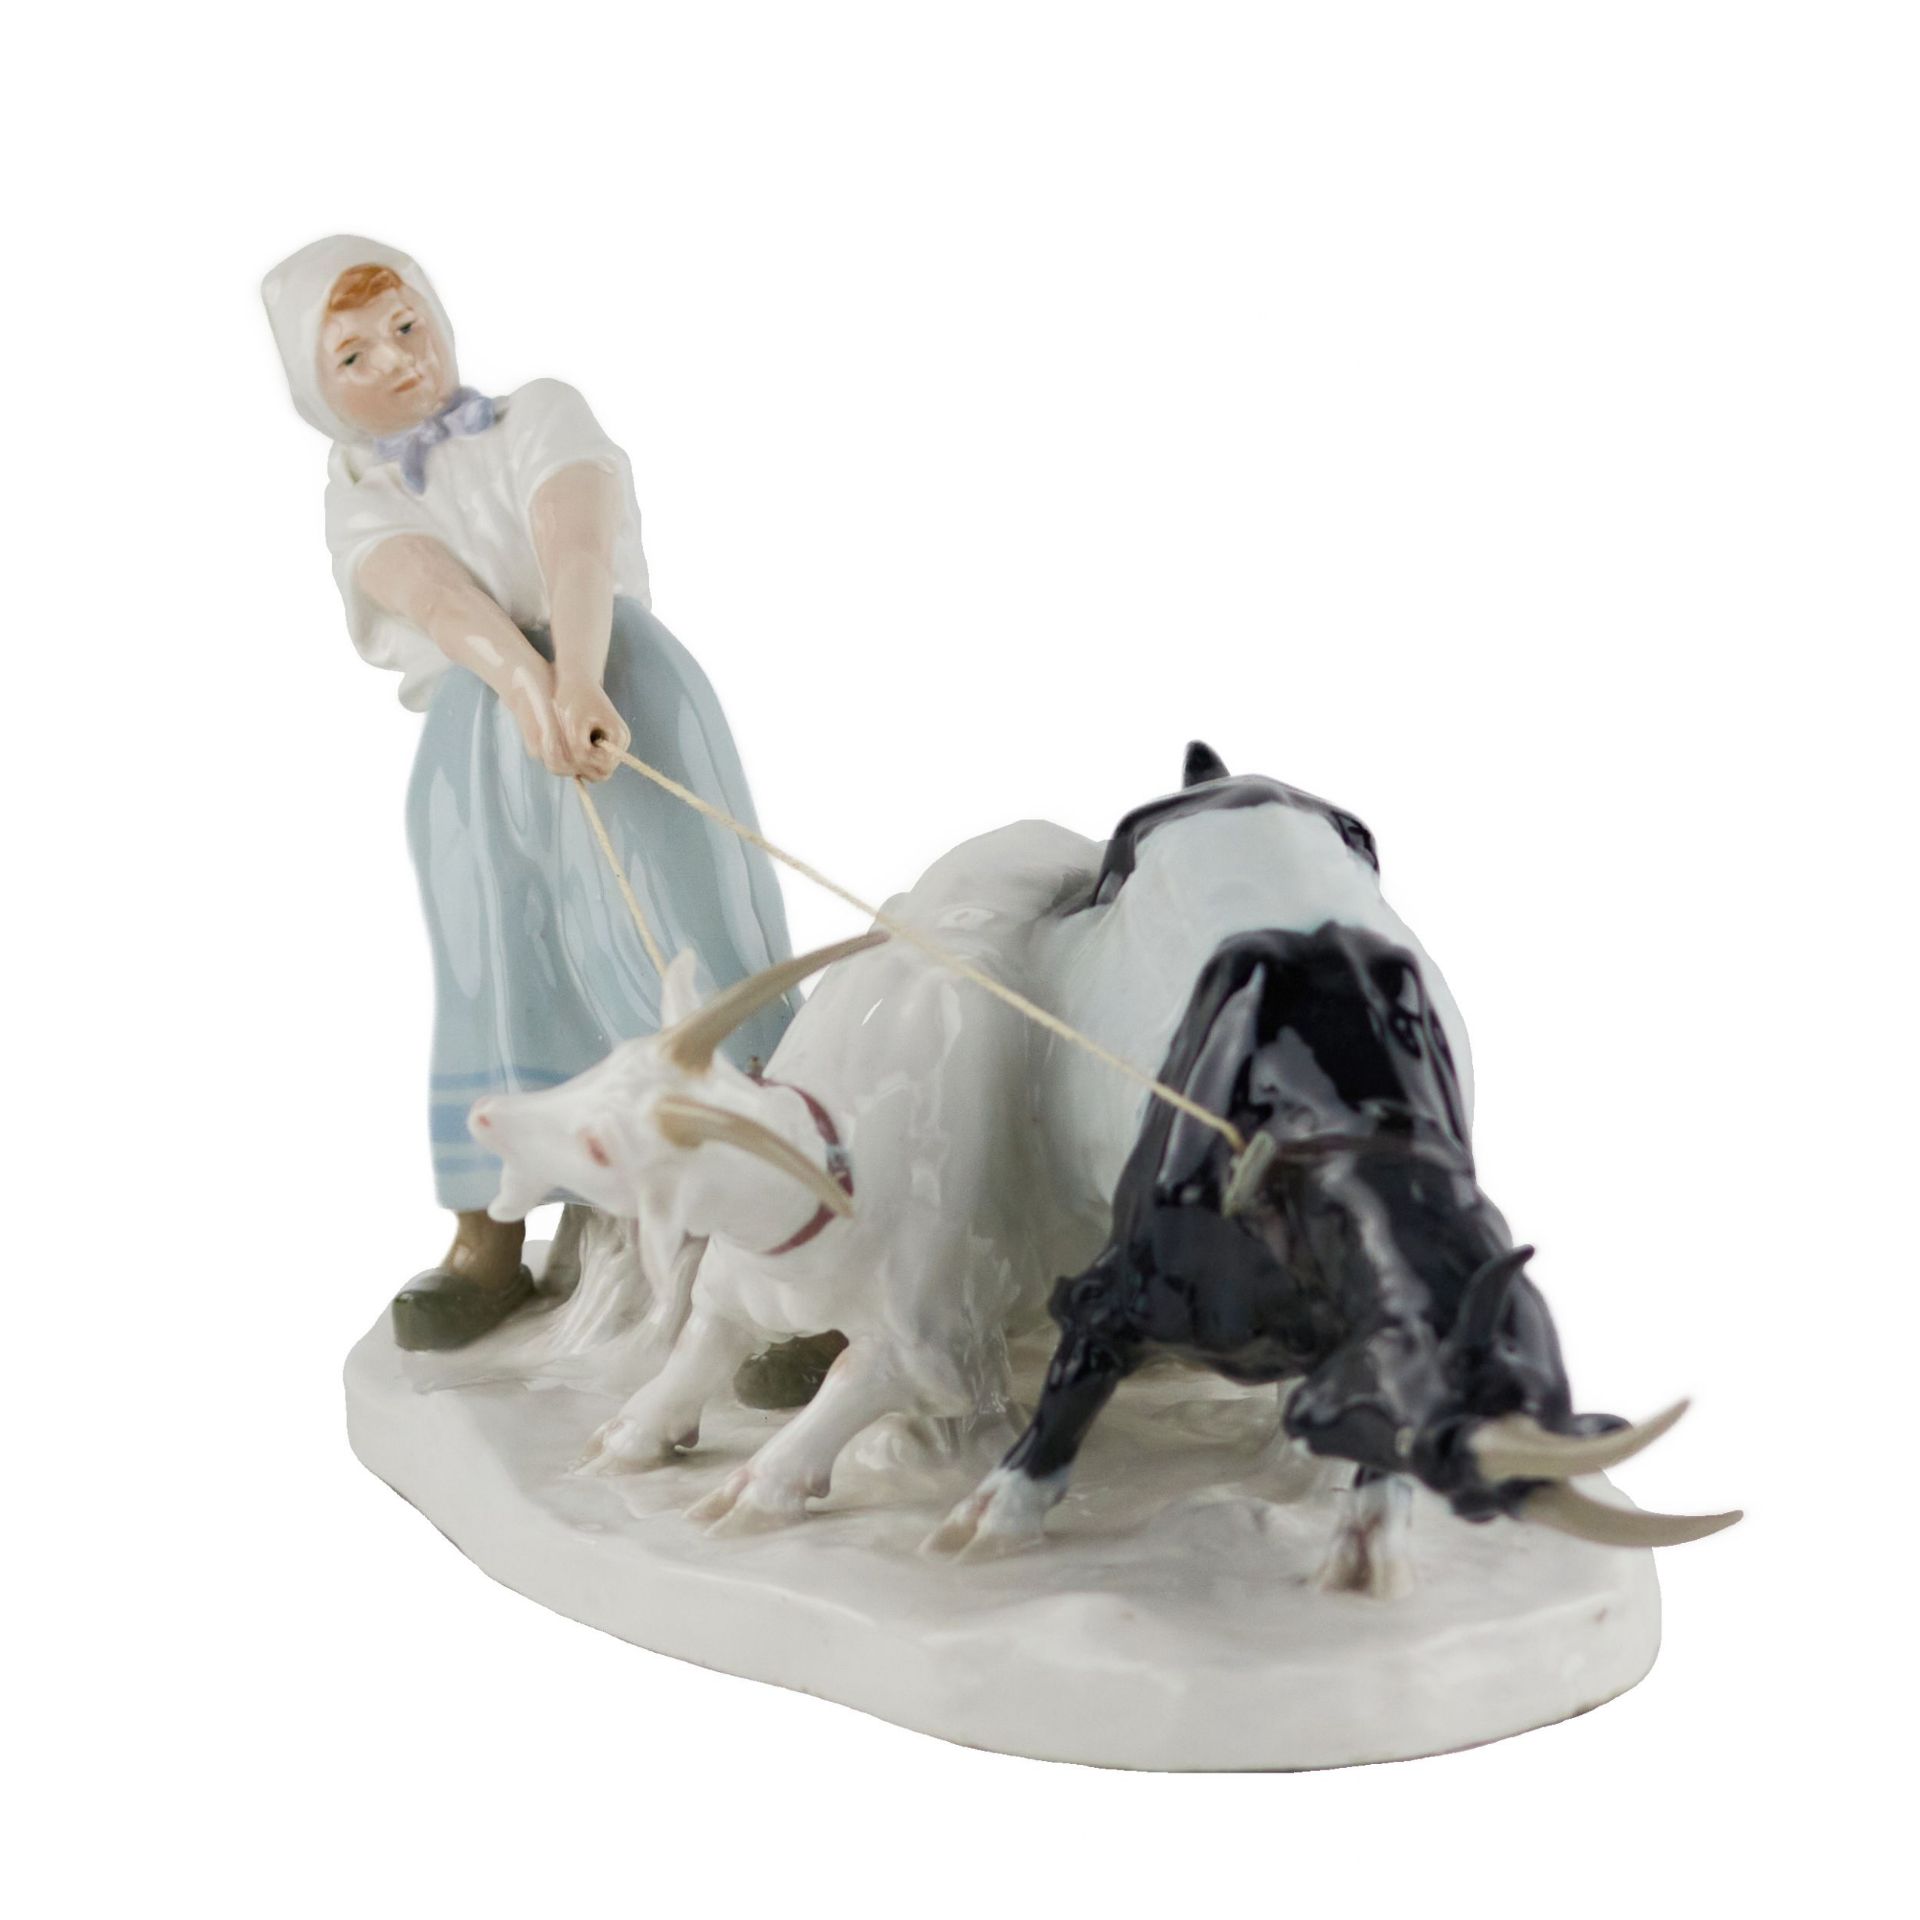 Porcelain composition Shepherdess with goats. Pilz, Otto. Meissen. 1850-1924. - Bild 2 aus 7